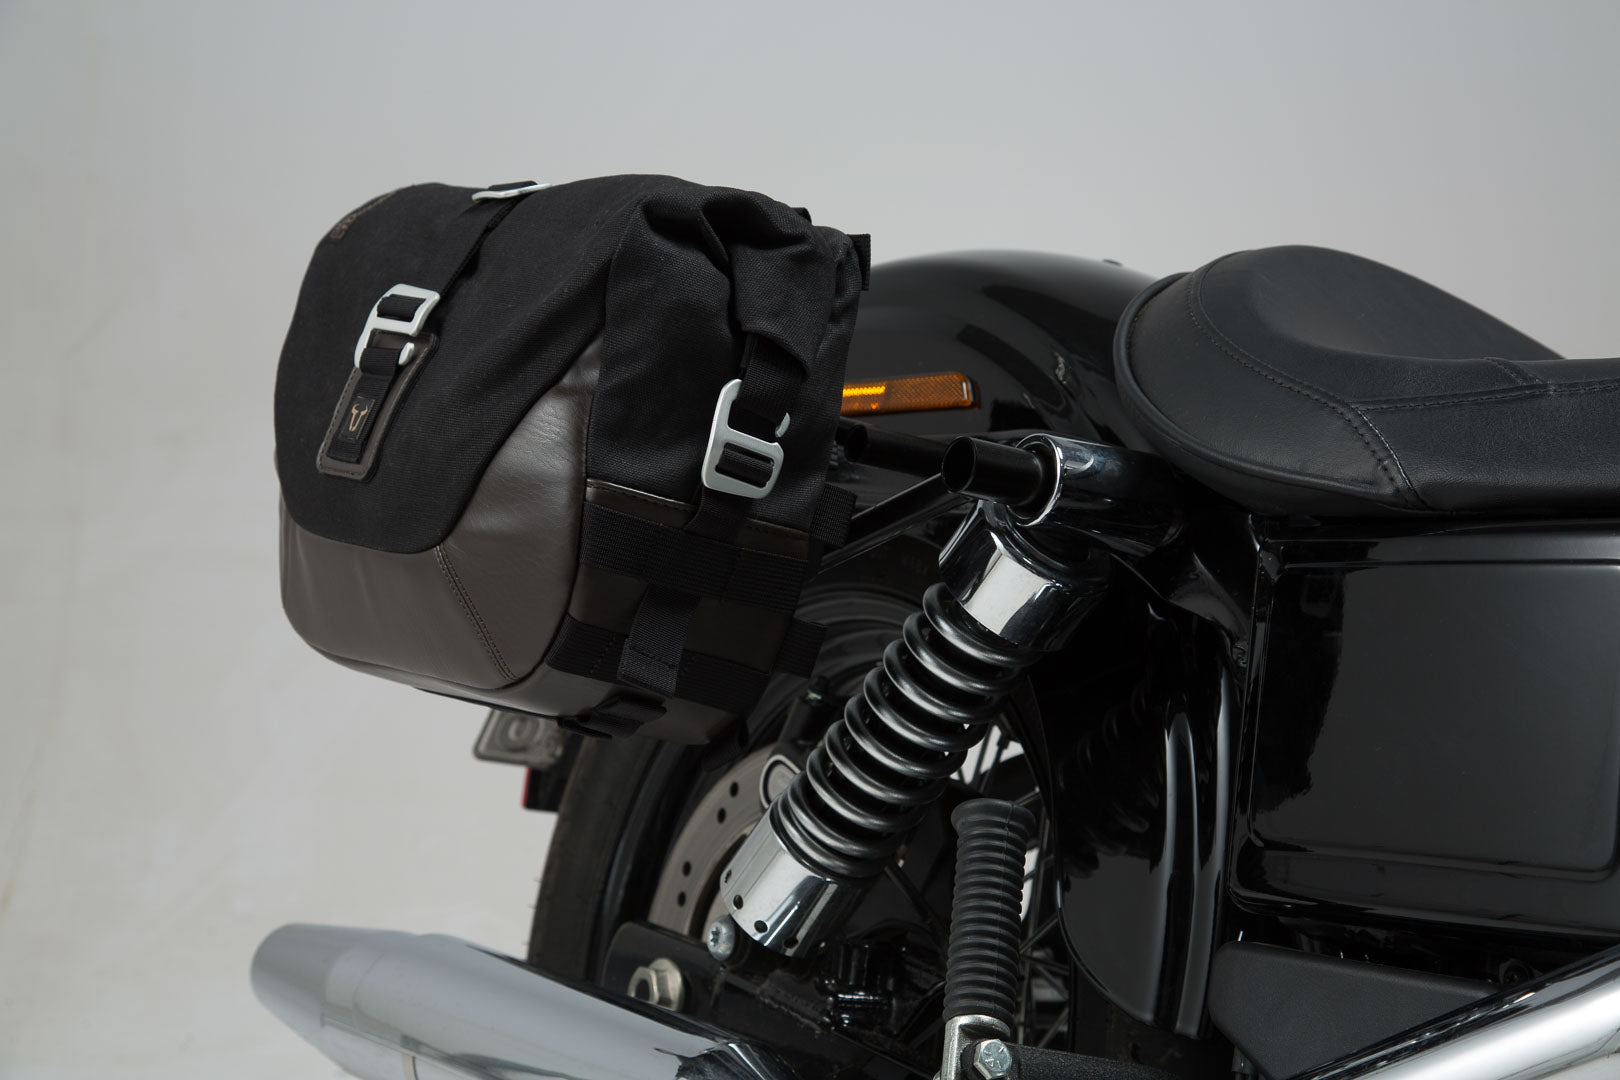 Legend Gear Side Bag System LC Harley-Davidson Dyna Wide Glide (09-17) Black Edition